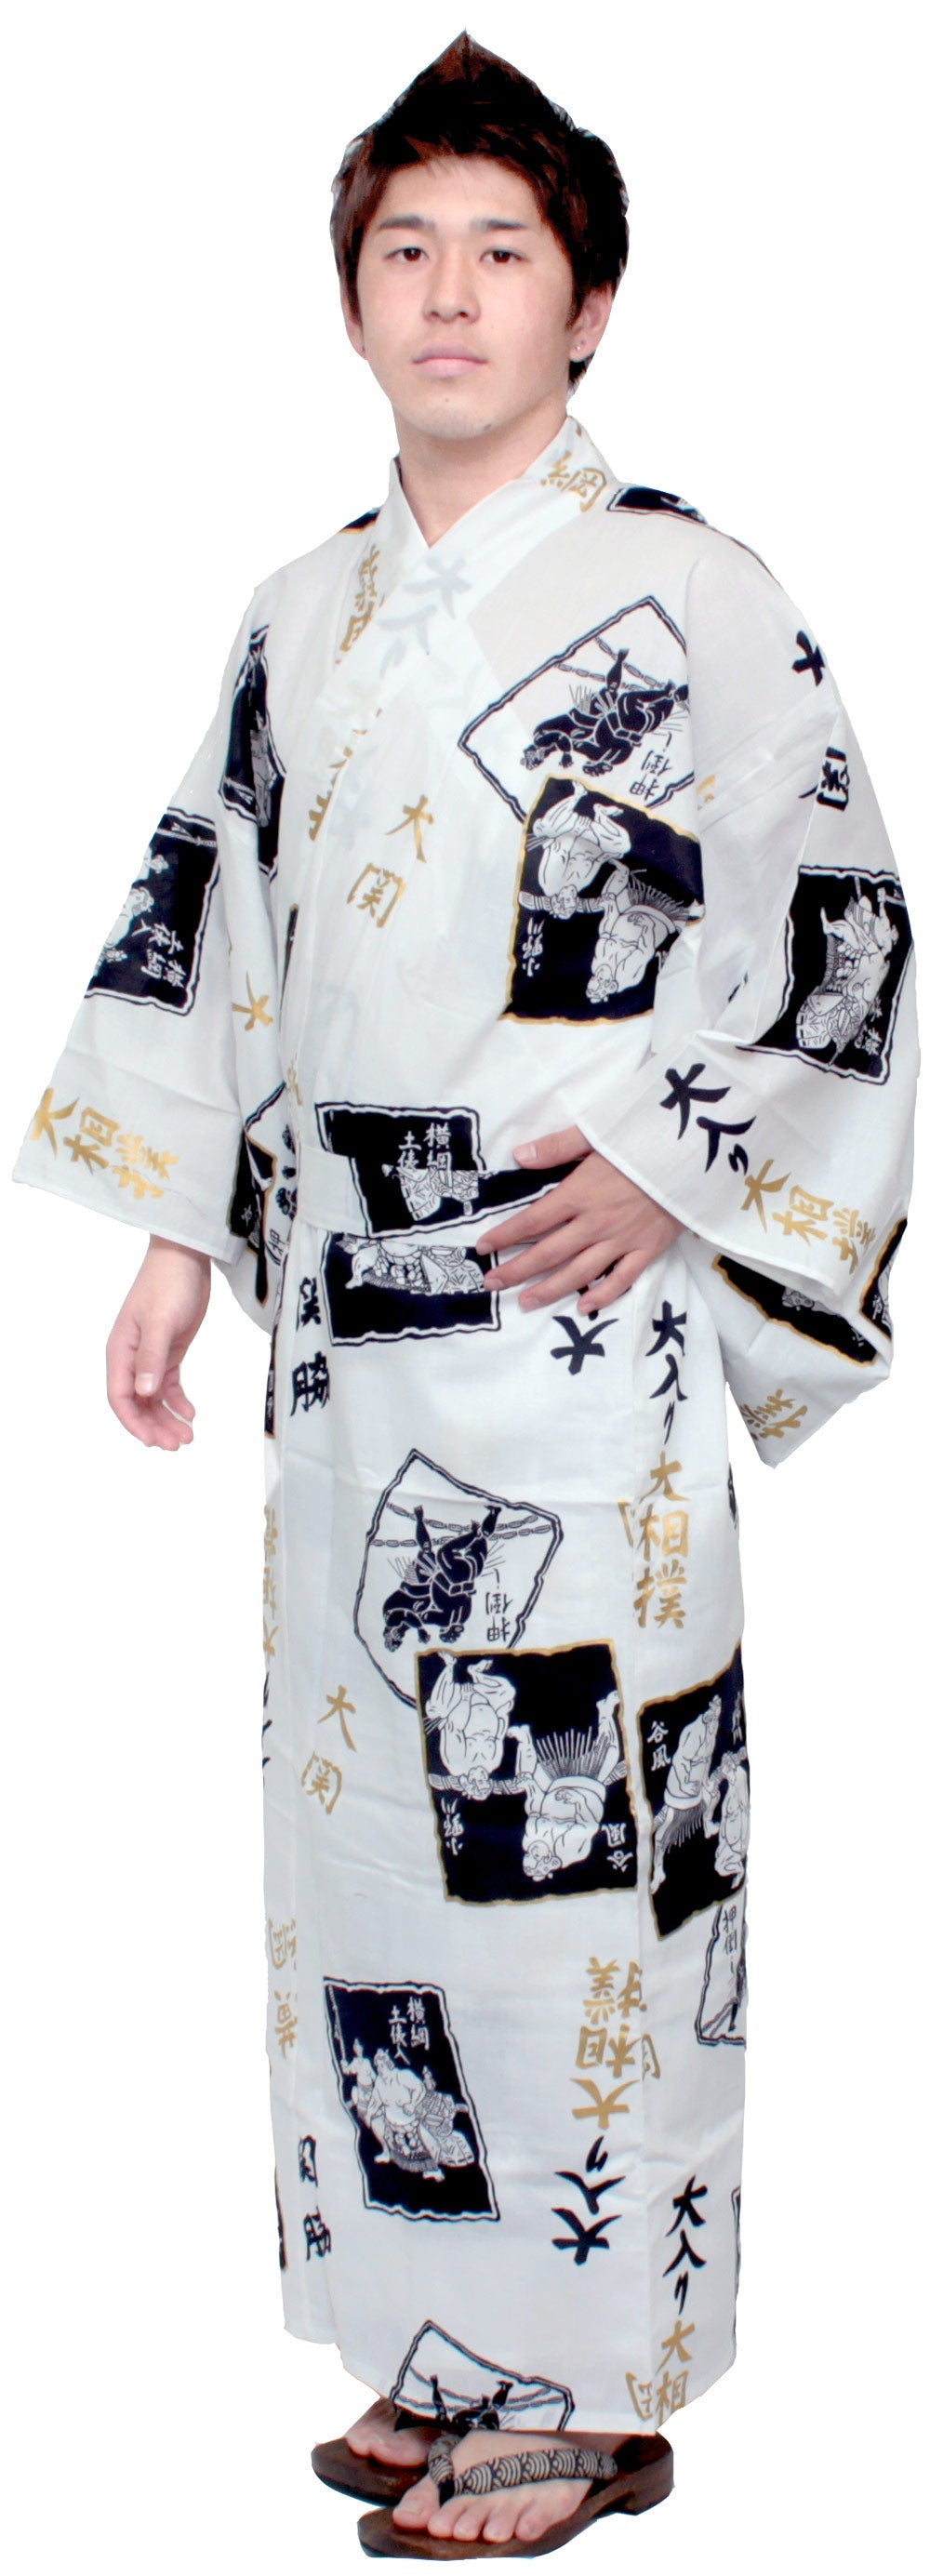 Men's Easy Yukata / Kimono Robe : Japanese Traditional Clothes - Robe SUMO Wrestler White